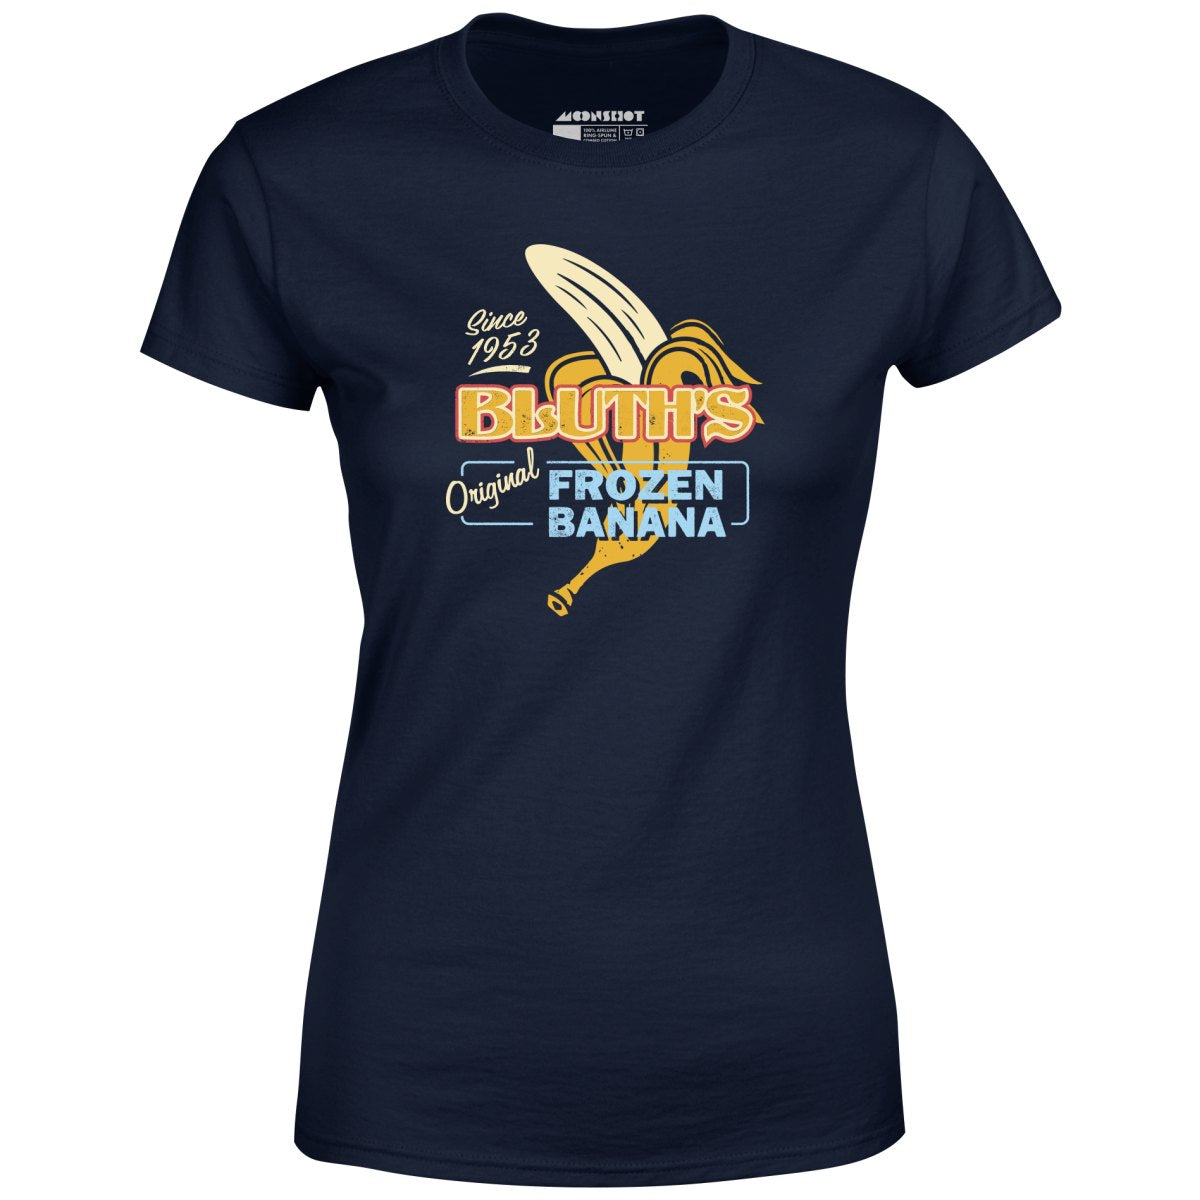 Bluth's Original Frozen Banana - Women's T-Shirt